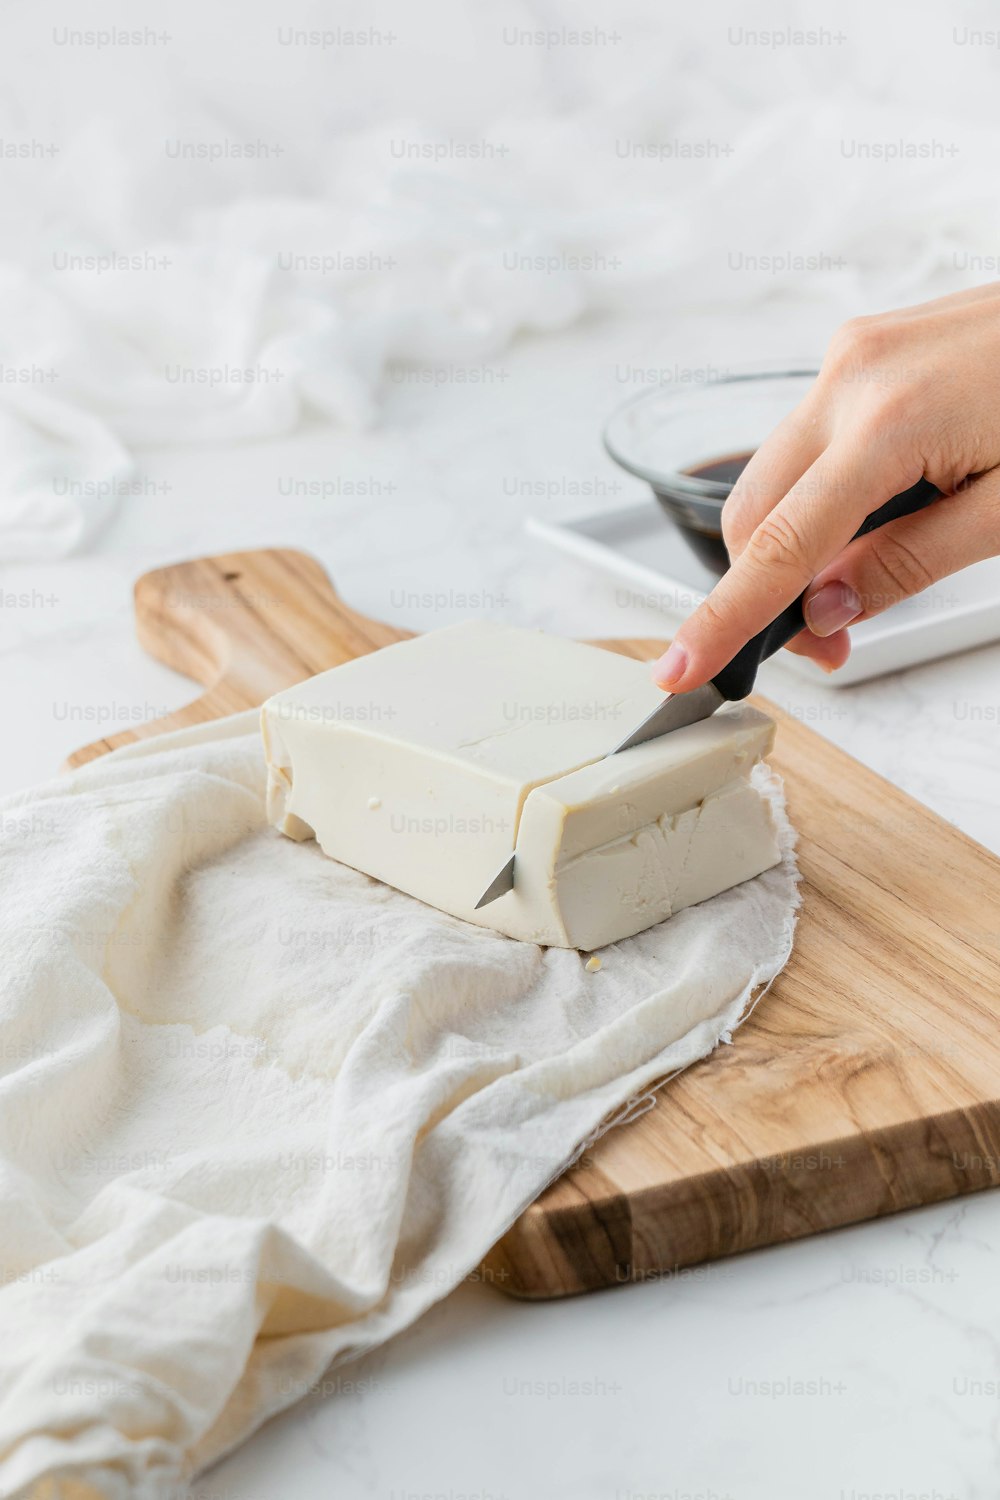 Una persona cortando un bloque de queso en una tabla de cortar